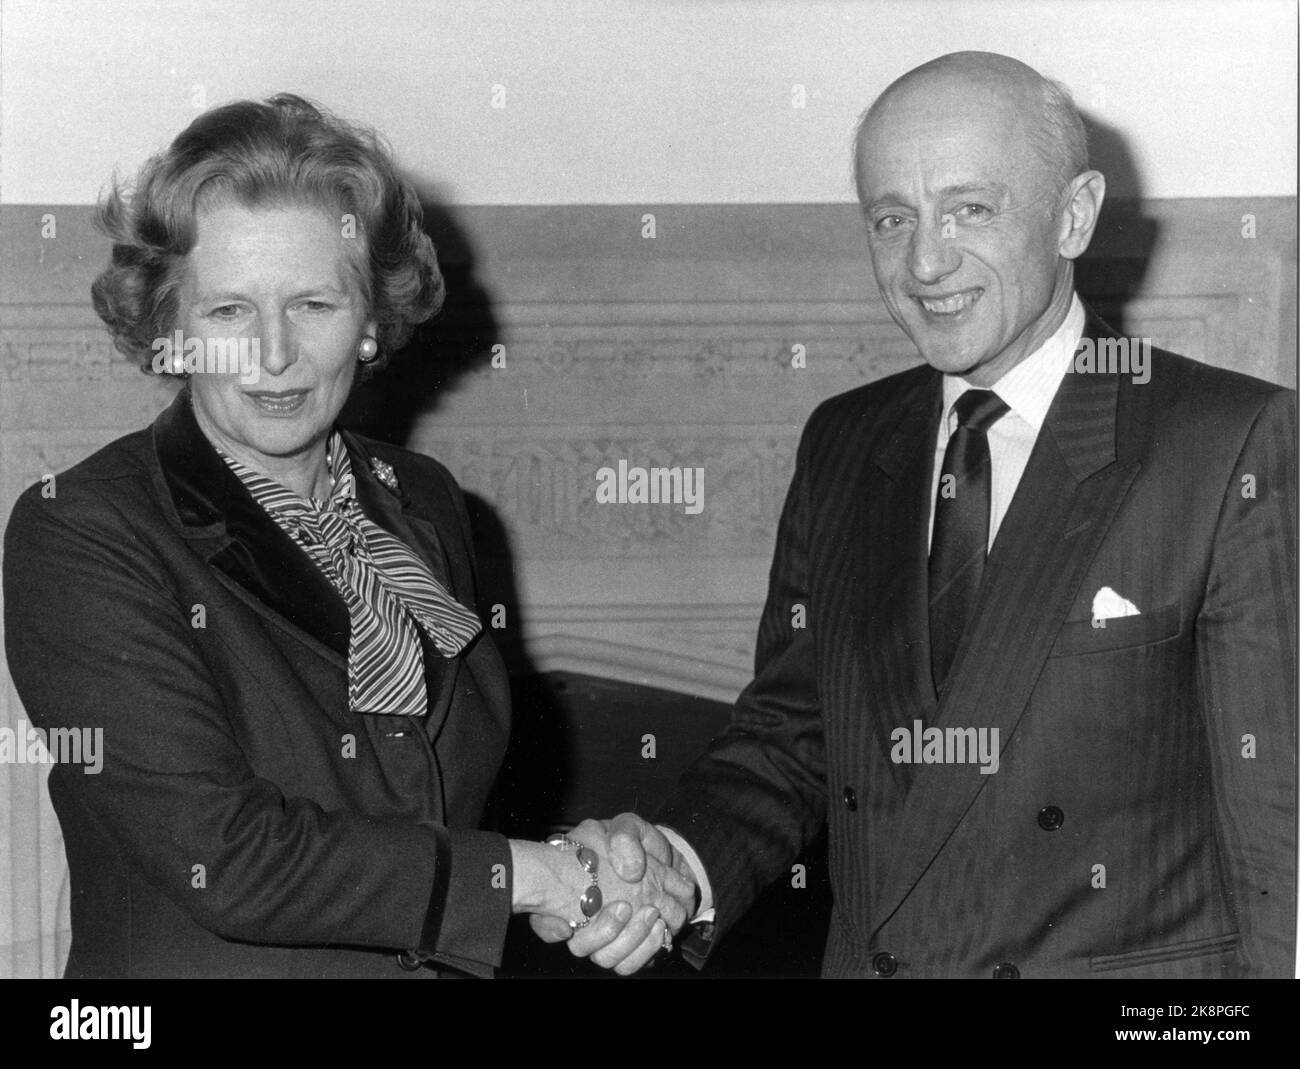 Londra, Inghilterra 19851127 il primo ministro Kåre Willoch ha colloqui politici con il primo ministro britannico Margaret Thatcher. Qui i due insieme mentre si salutano nella casa inferiore. Foto: Per Løchen / NTB Foto Stock